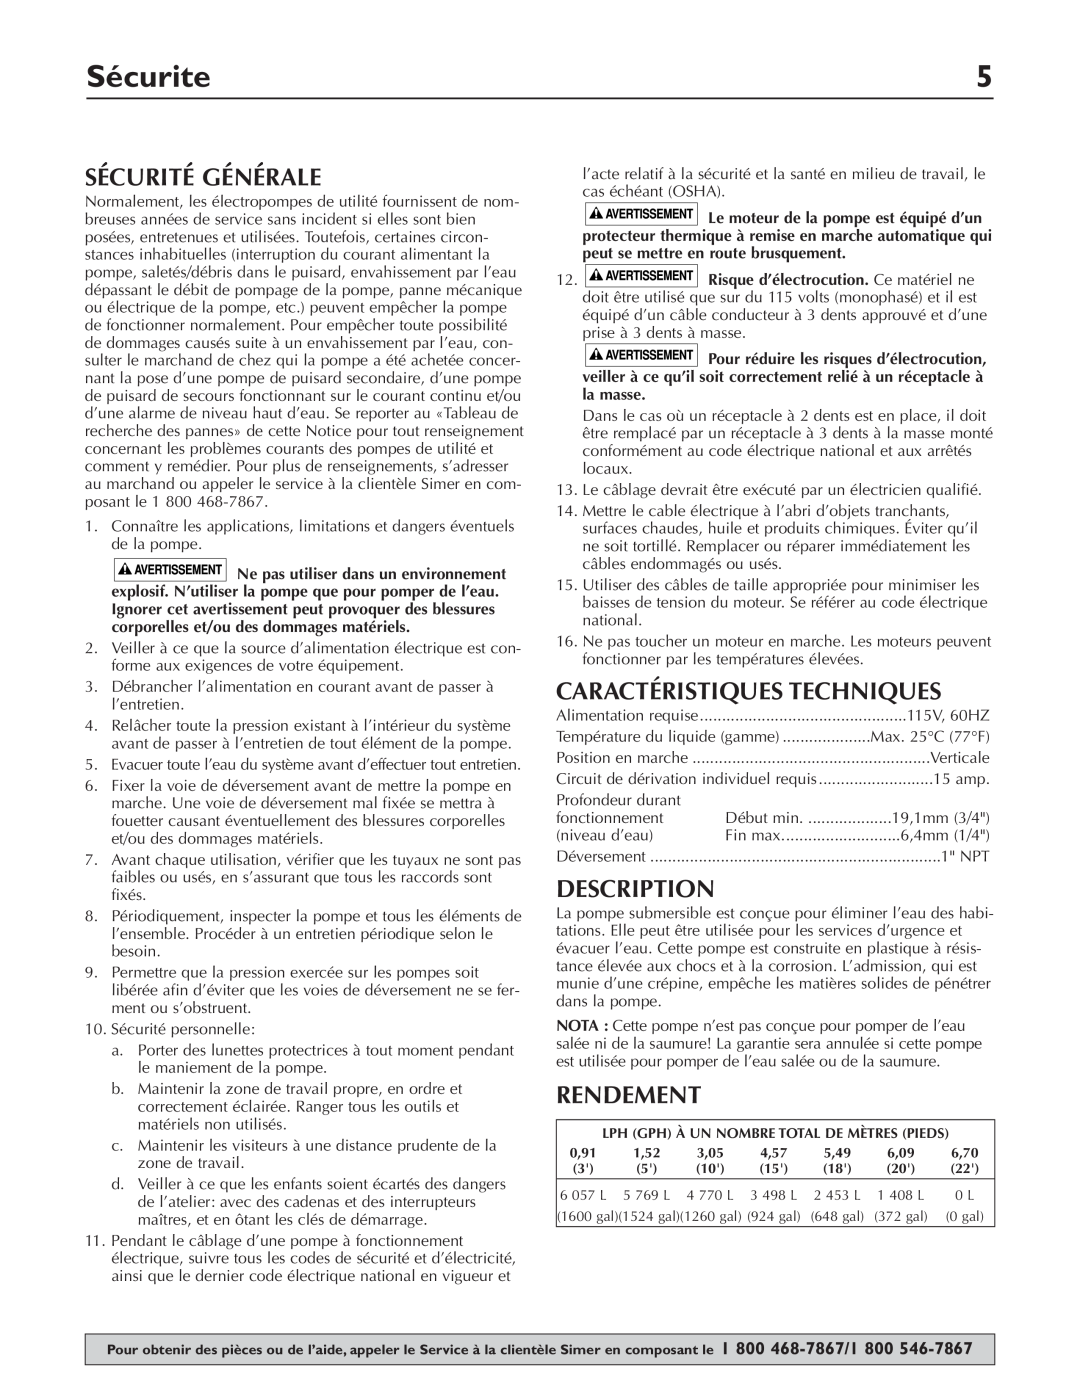 Simer Pumps 2330-03 owner manual Sécurite, Sécurité Générale, Caractéristiques Techniques, Rendement, Description 